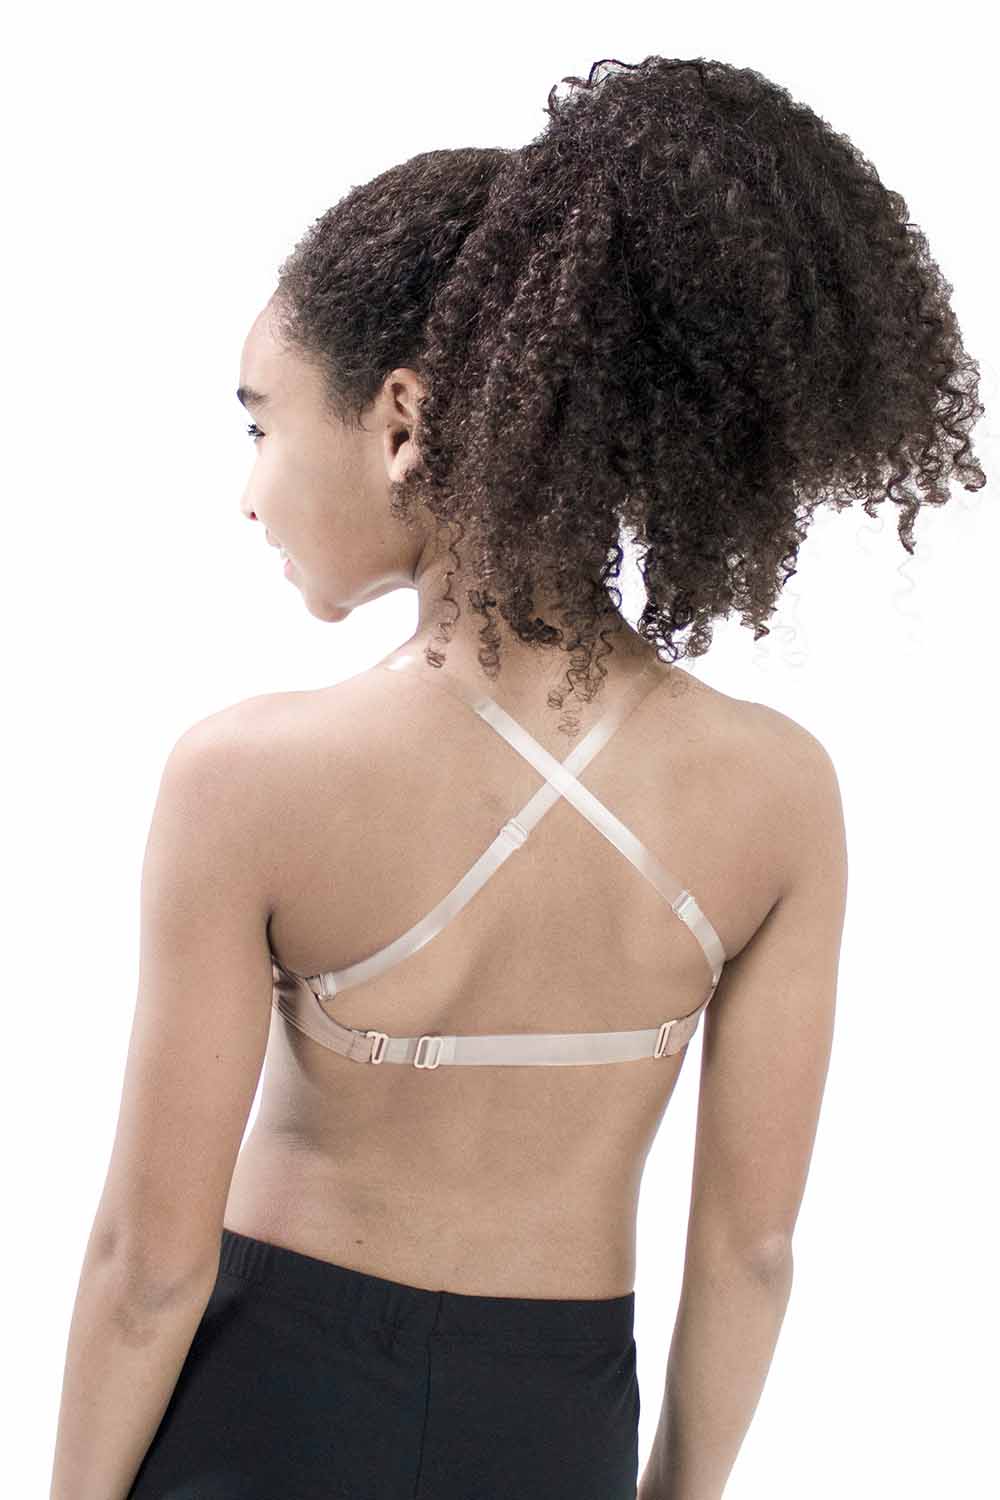 Clear Strap Backless Bra Wireless Bralette Low Back Cotton Dance Bras for  Girls Women Small Breast 